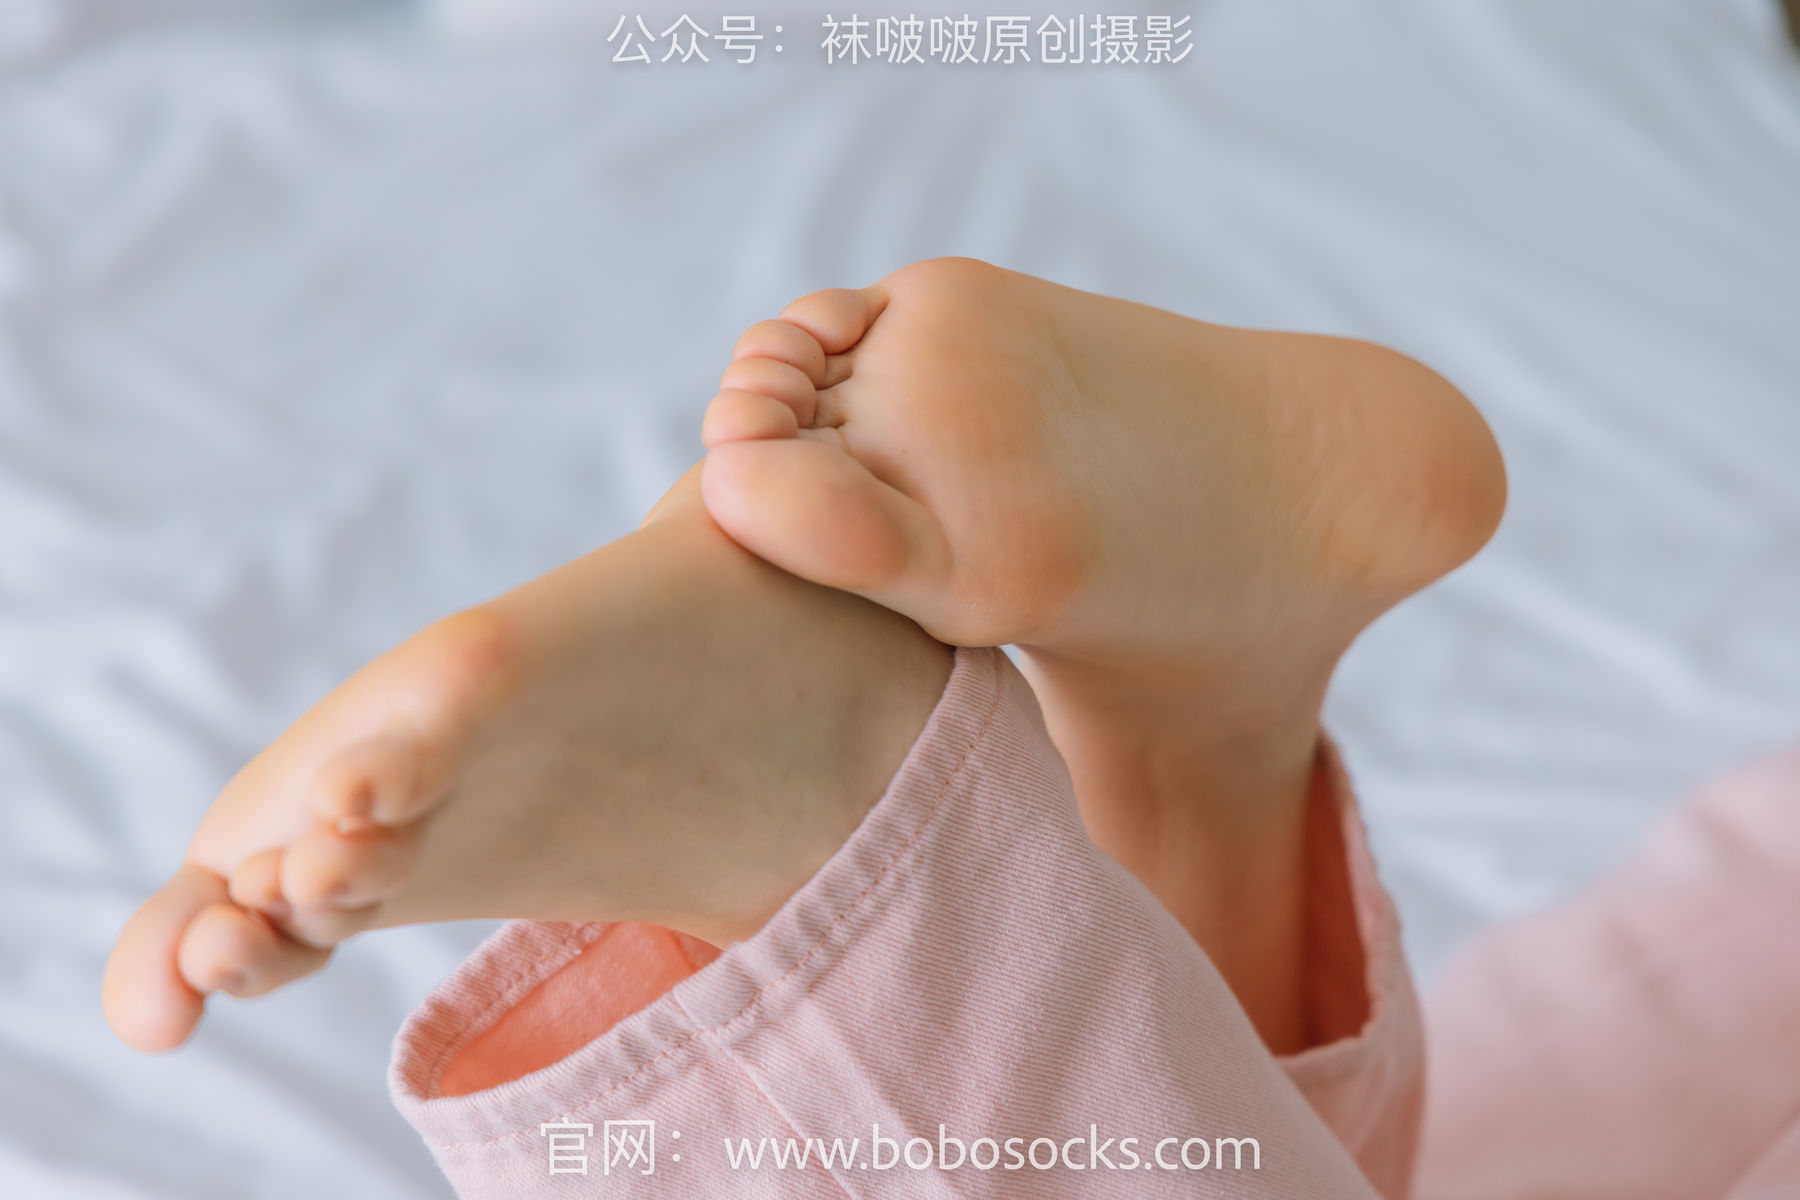 BoBoSocks袜啵啵 No.141 周周-运动鞋、白棉袜、裸足/(140P)